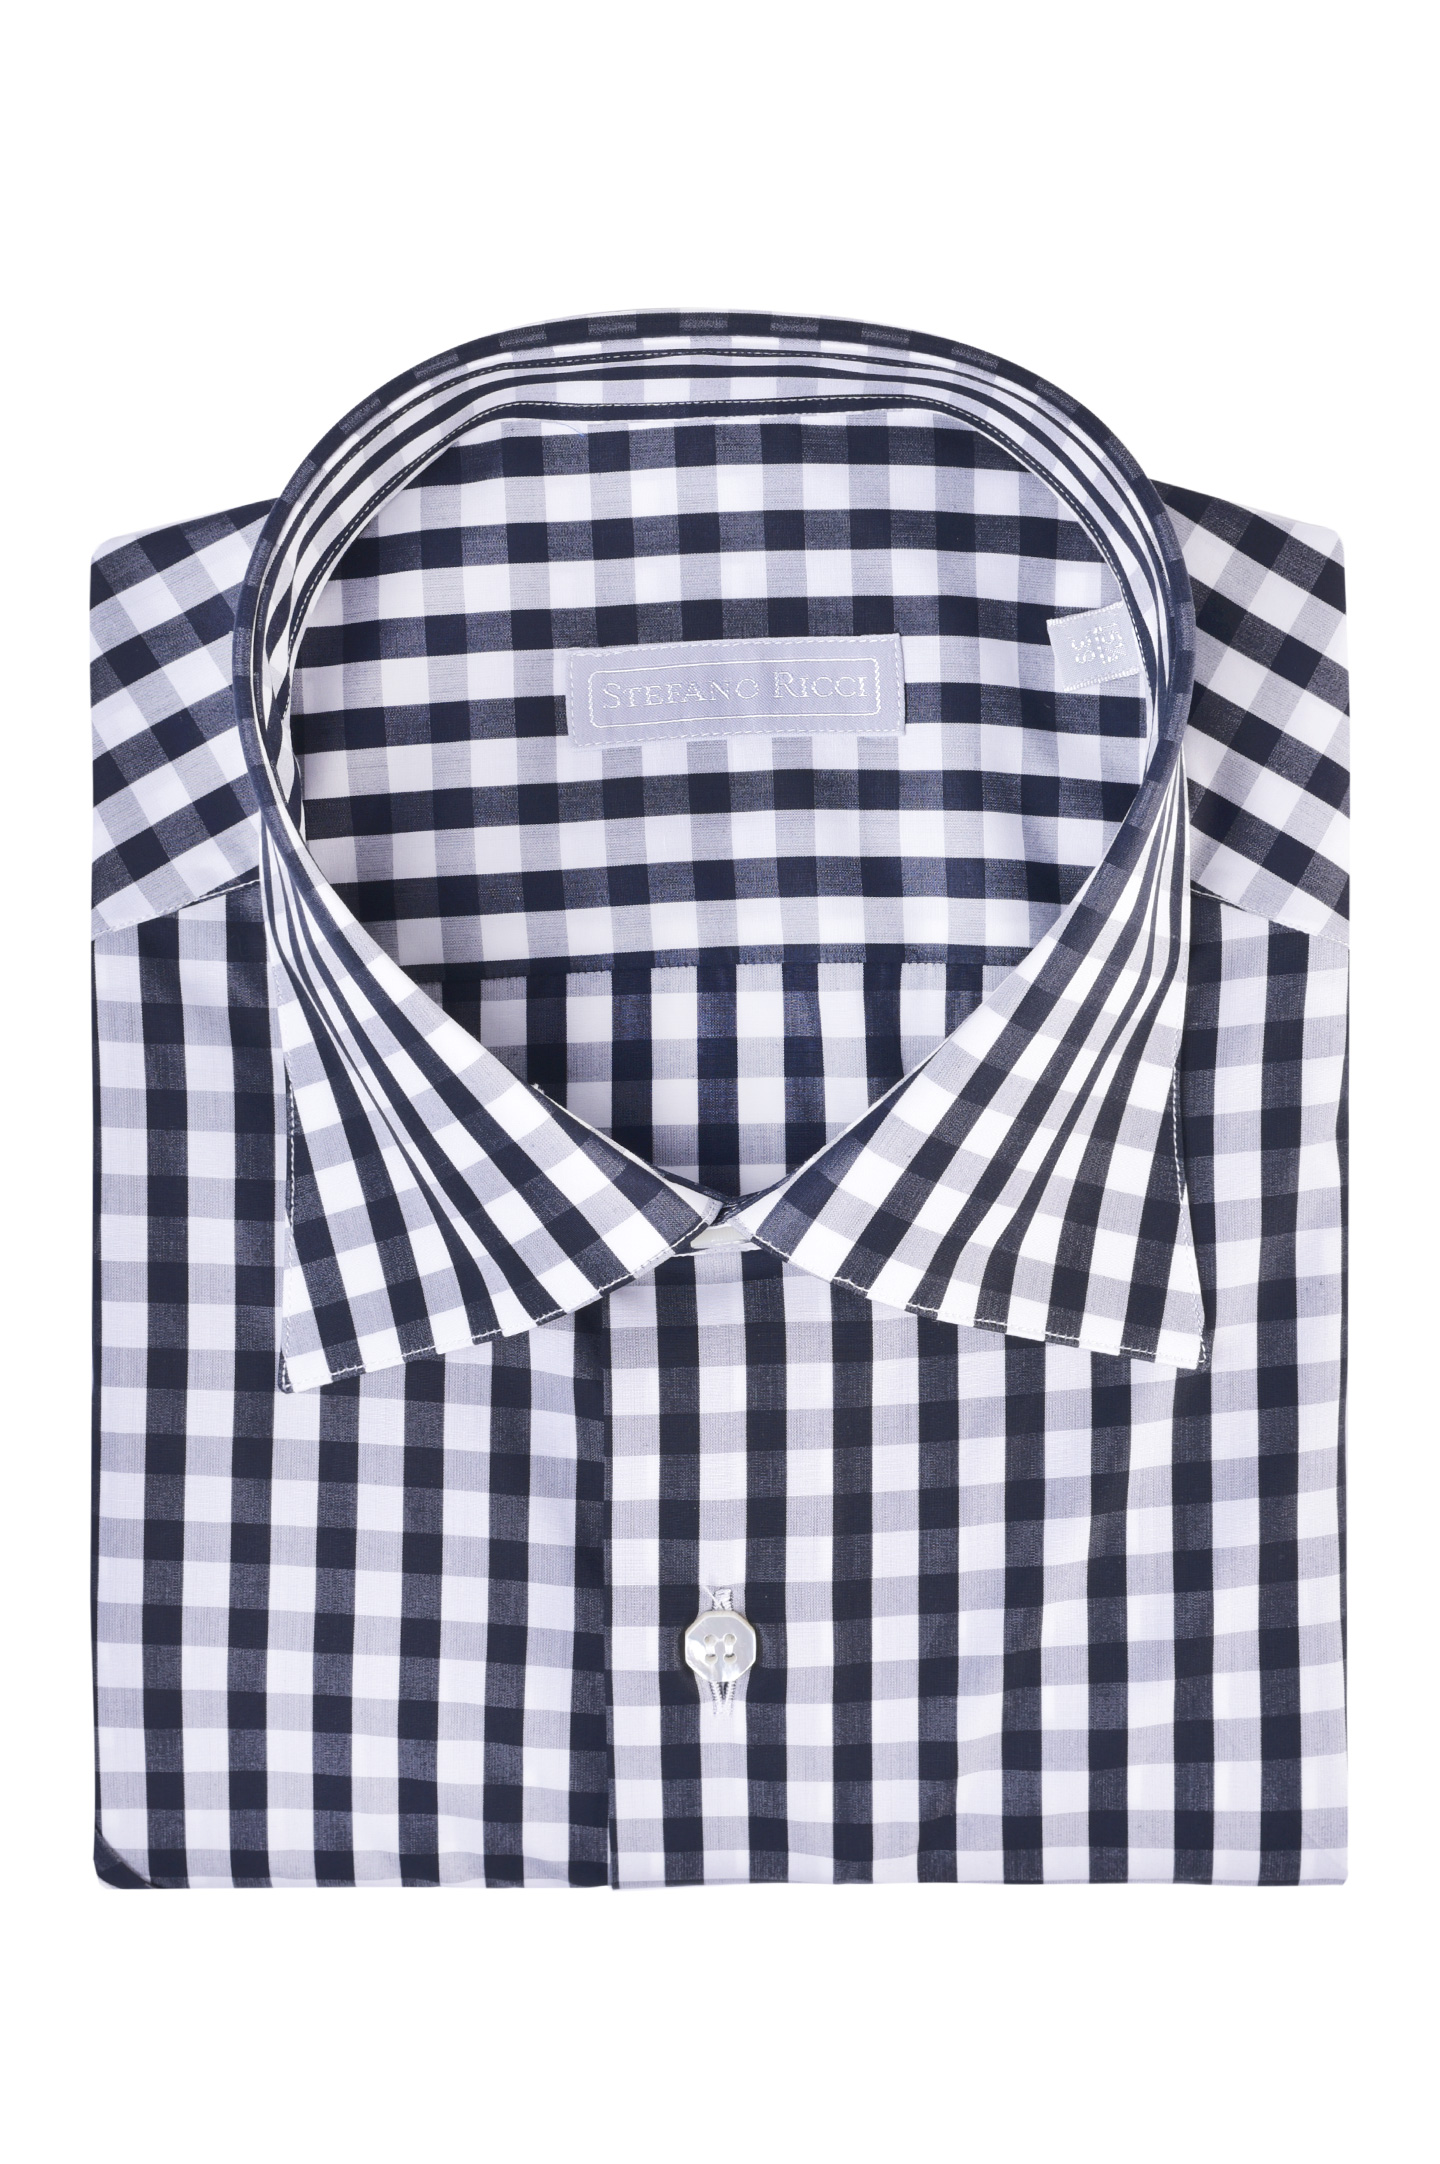 Рубашка STEFANO RICCI MC006030 L2107, цвет: Черно-белый, Мужской